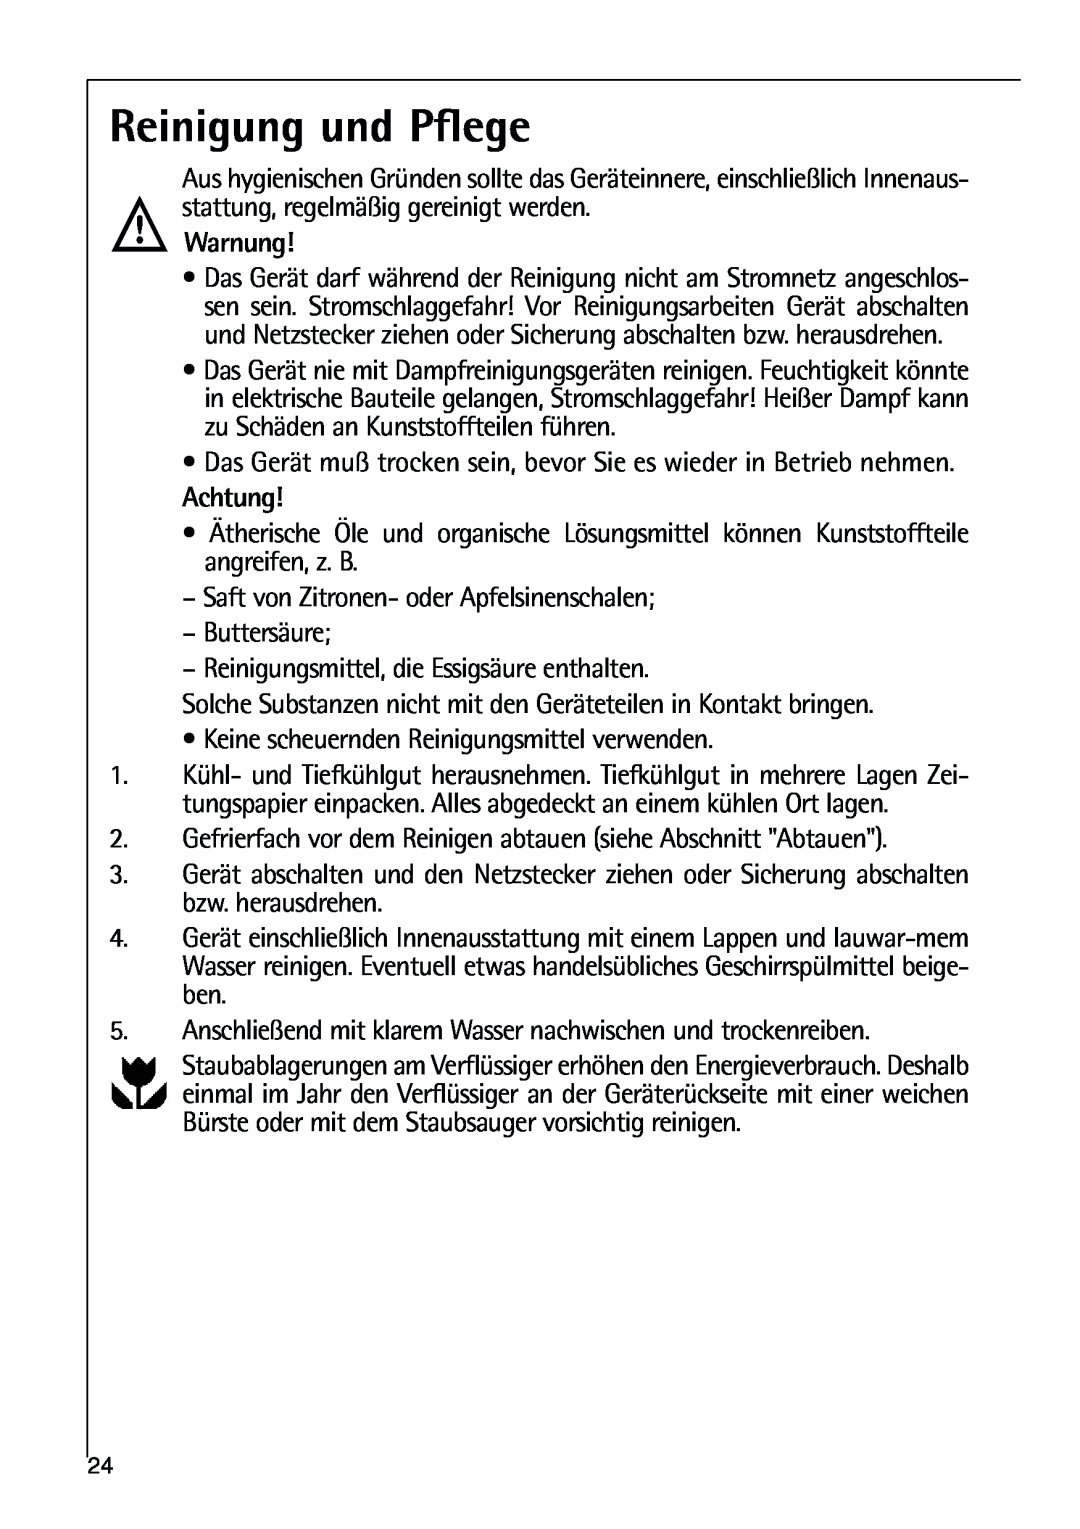 AEG 80318-5 KG user manual Reinigung und Pflege 